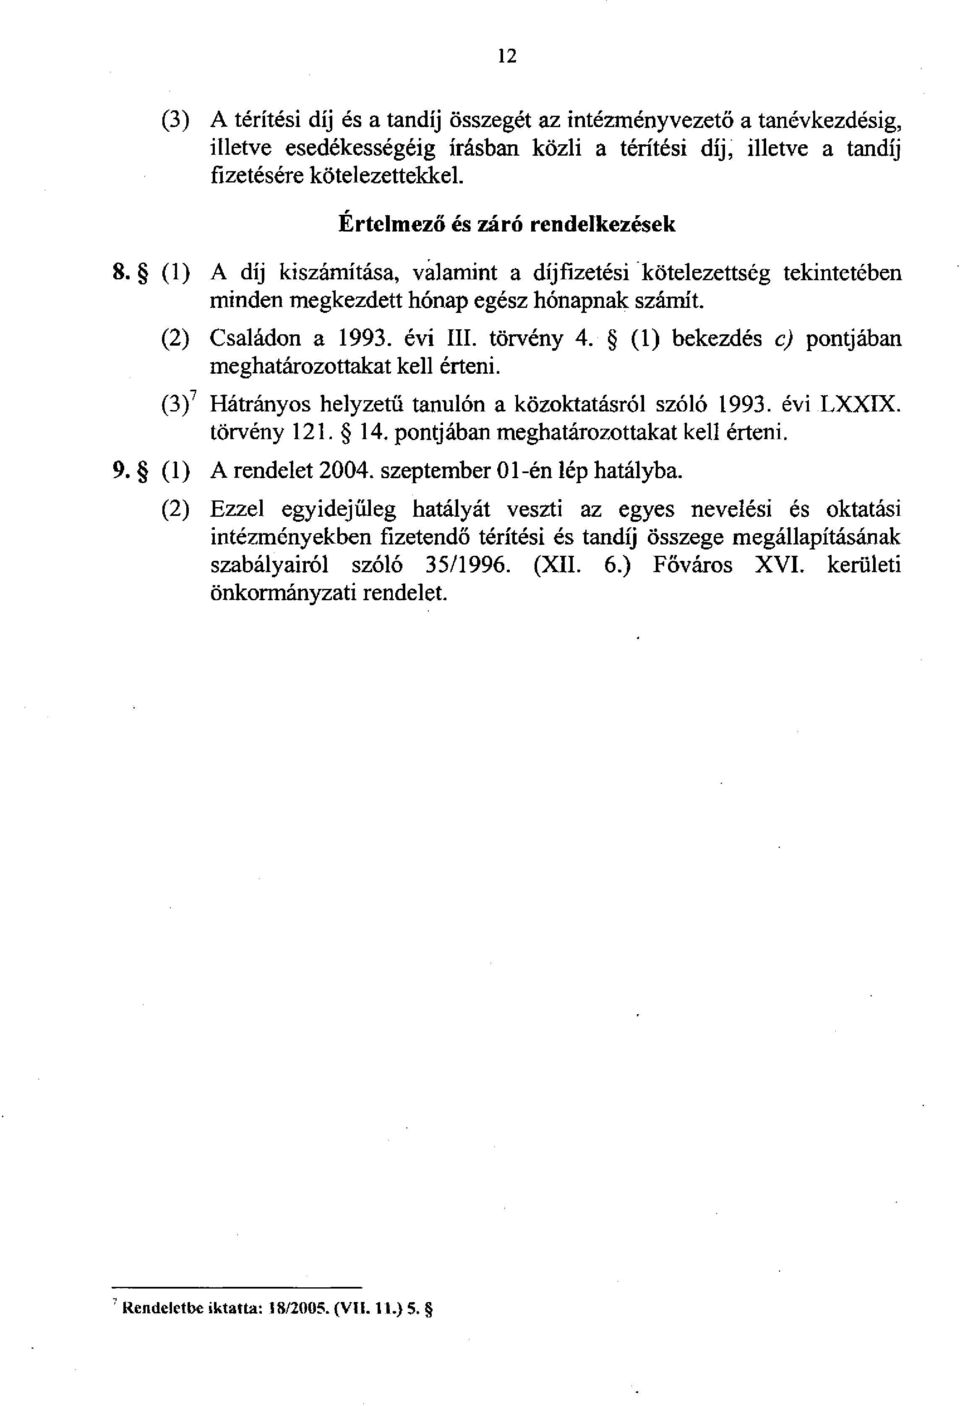 (1) bekezdés c) pontjában meghatározottakat kell érteni. (3) 7 Hátrányos helyzetű tanulón a közoktatásról szóló 1993. évi LXXIX. törvény 121. 14. pontjában meghatározottakat kell érteni. 9.